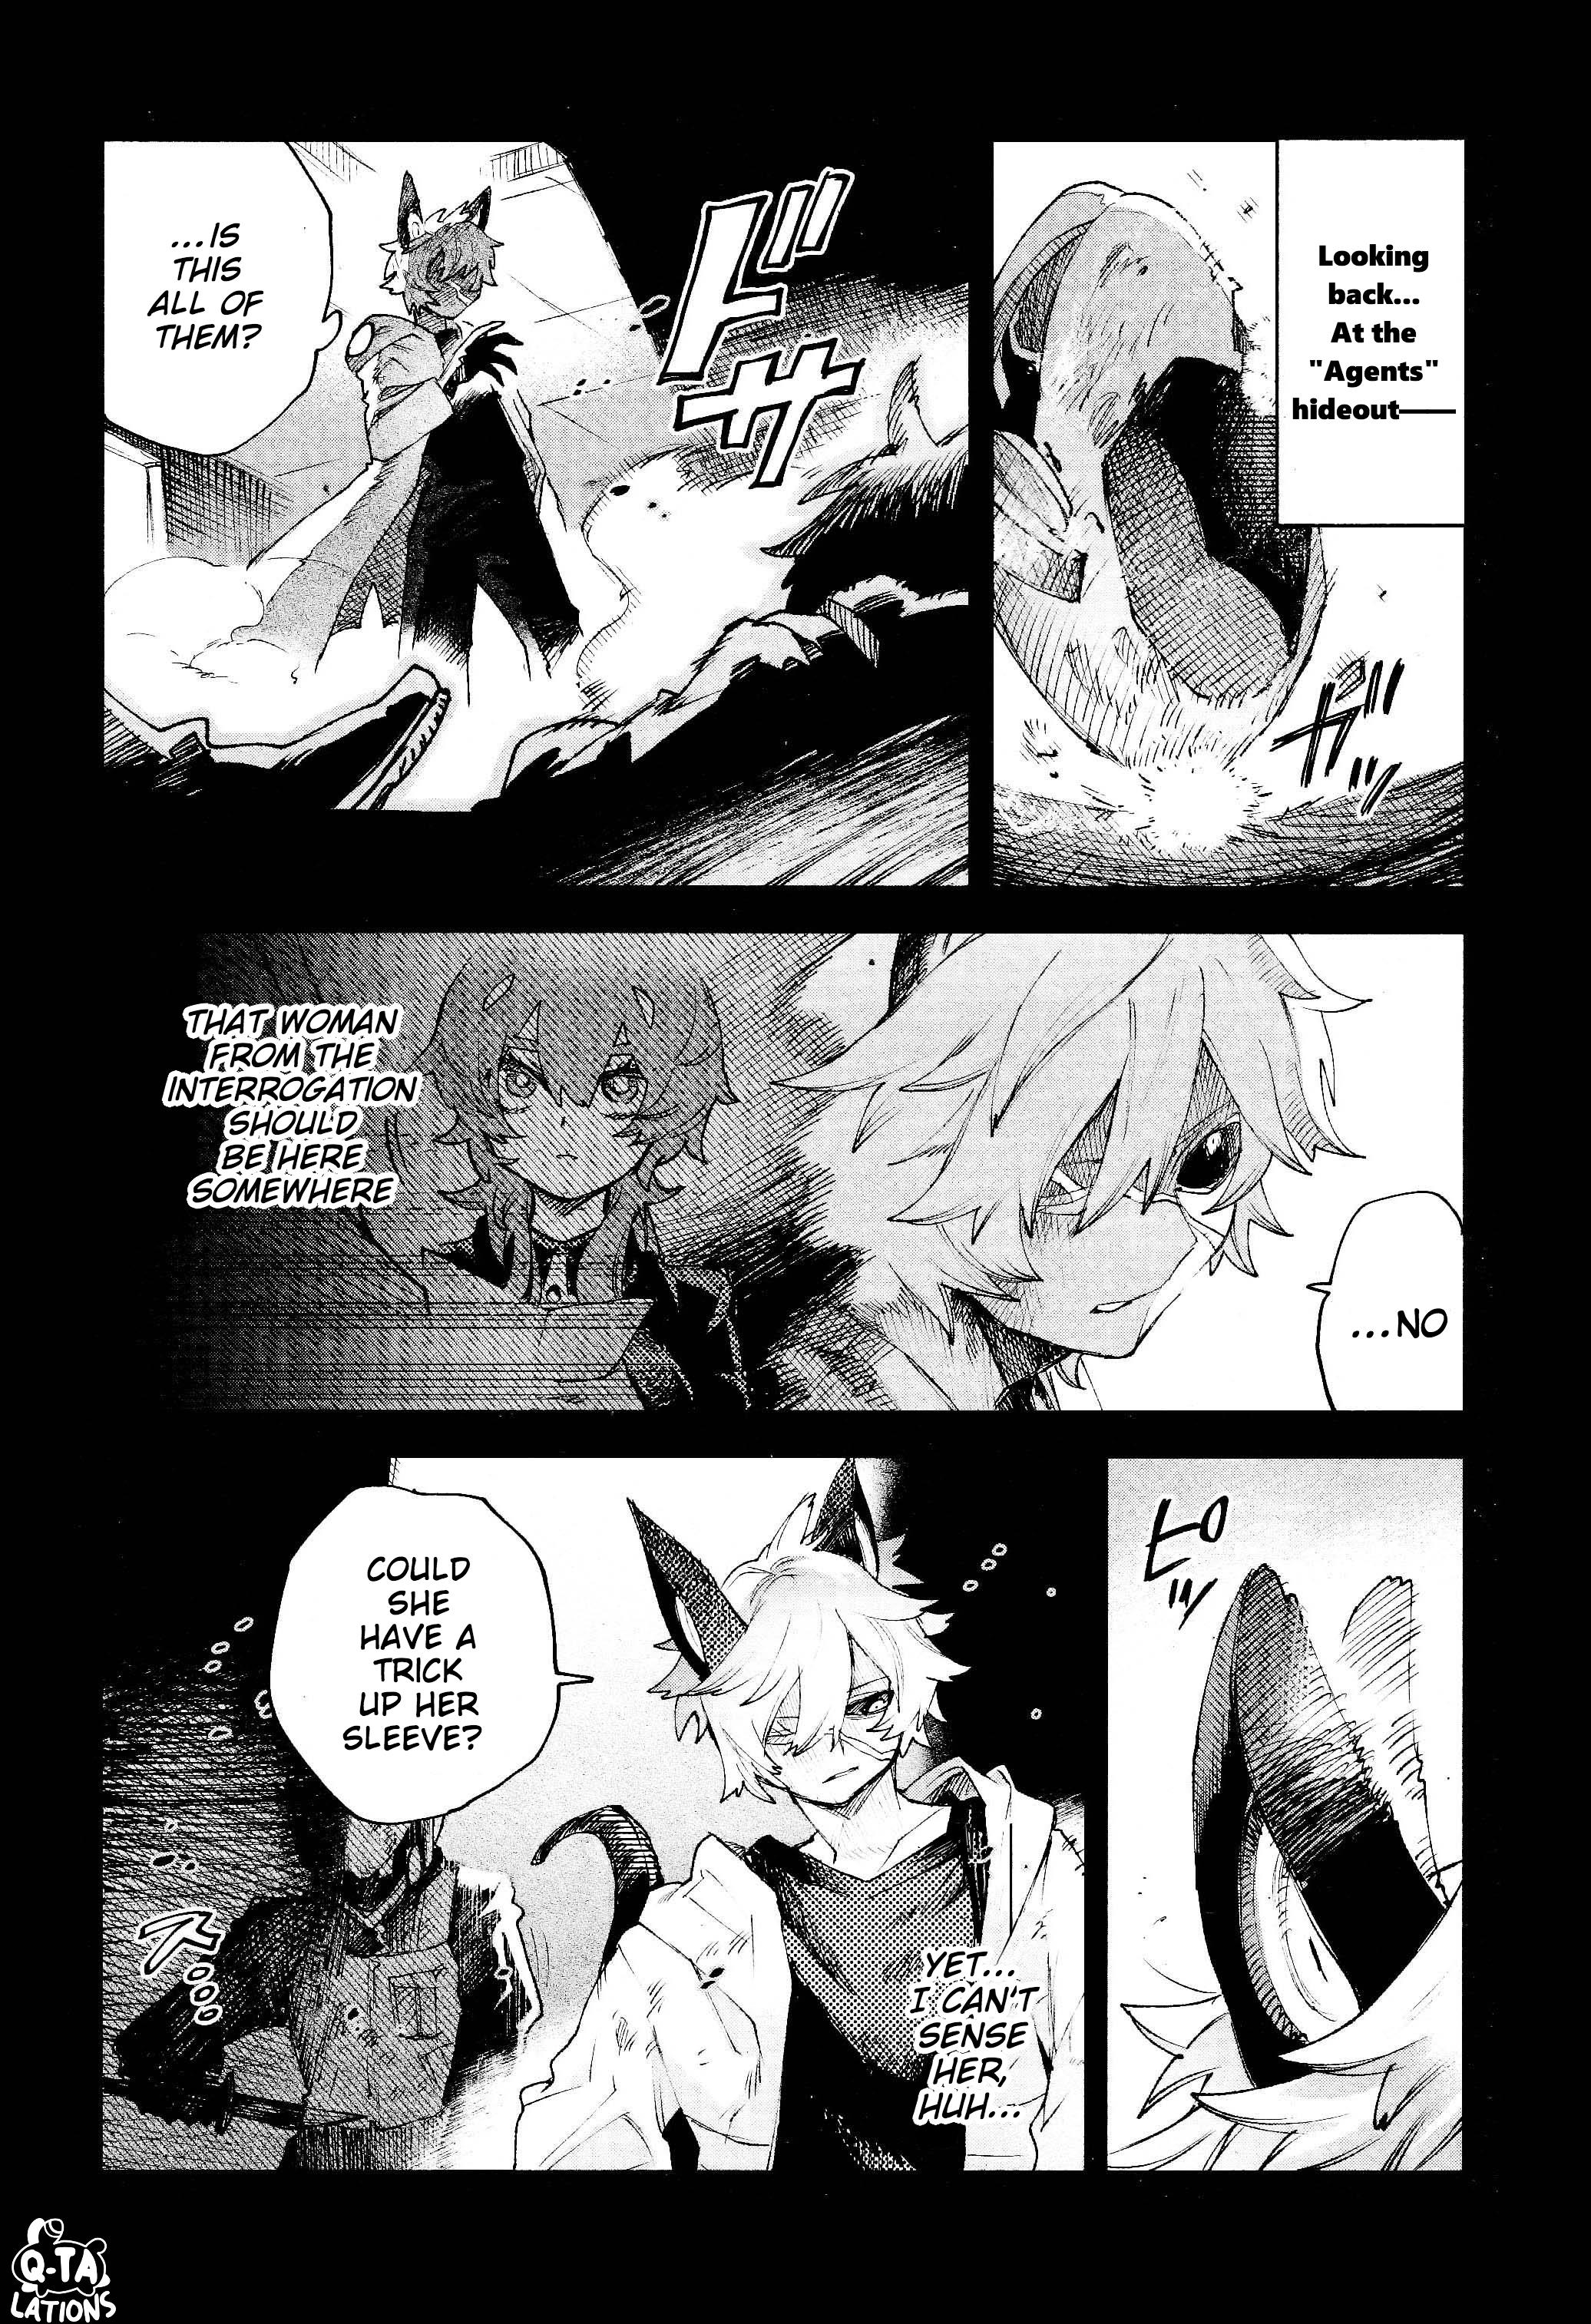 Kara No Kioku - Page 2